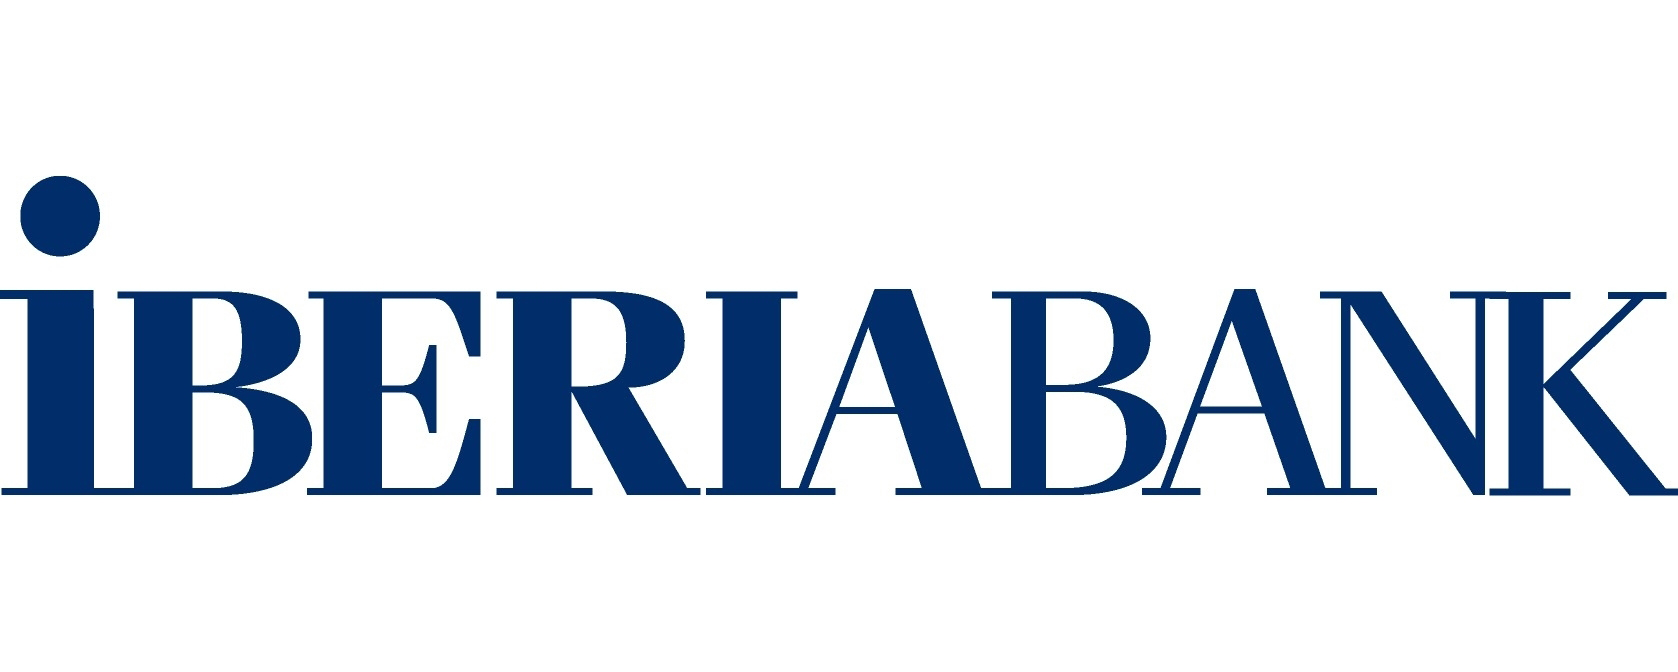 IberiaBank